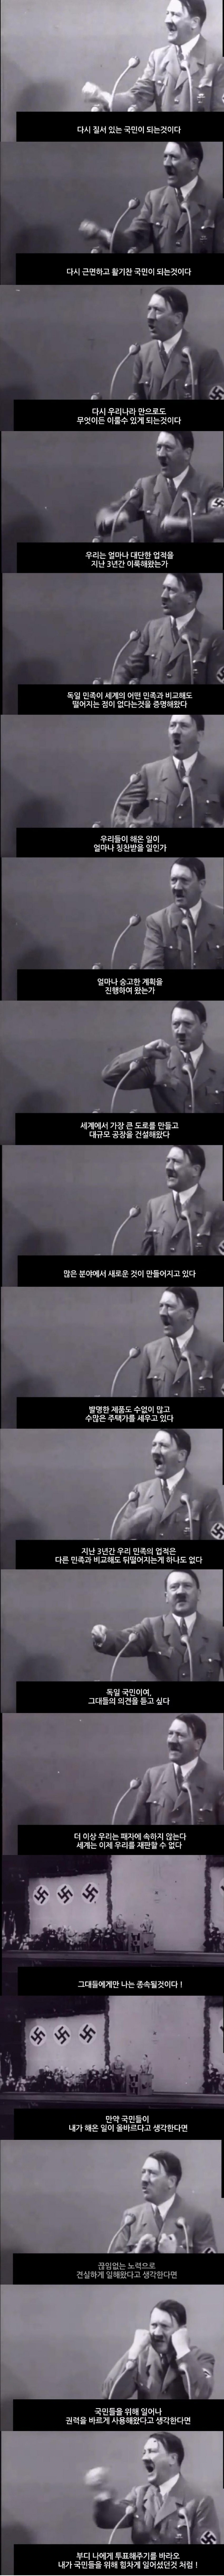 1935년 아돌프 히틀러의 연설 수준.jpg